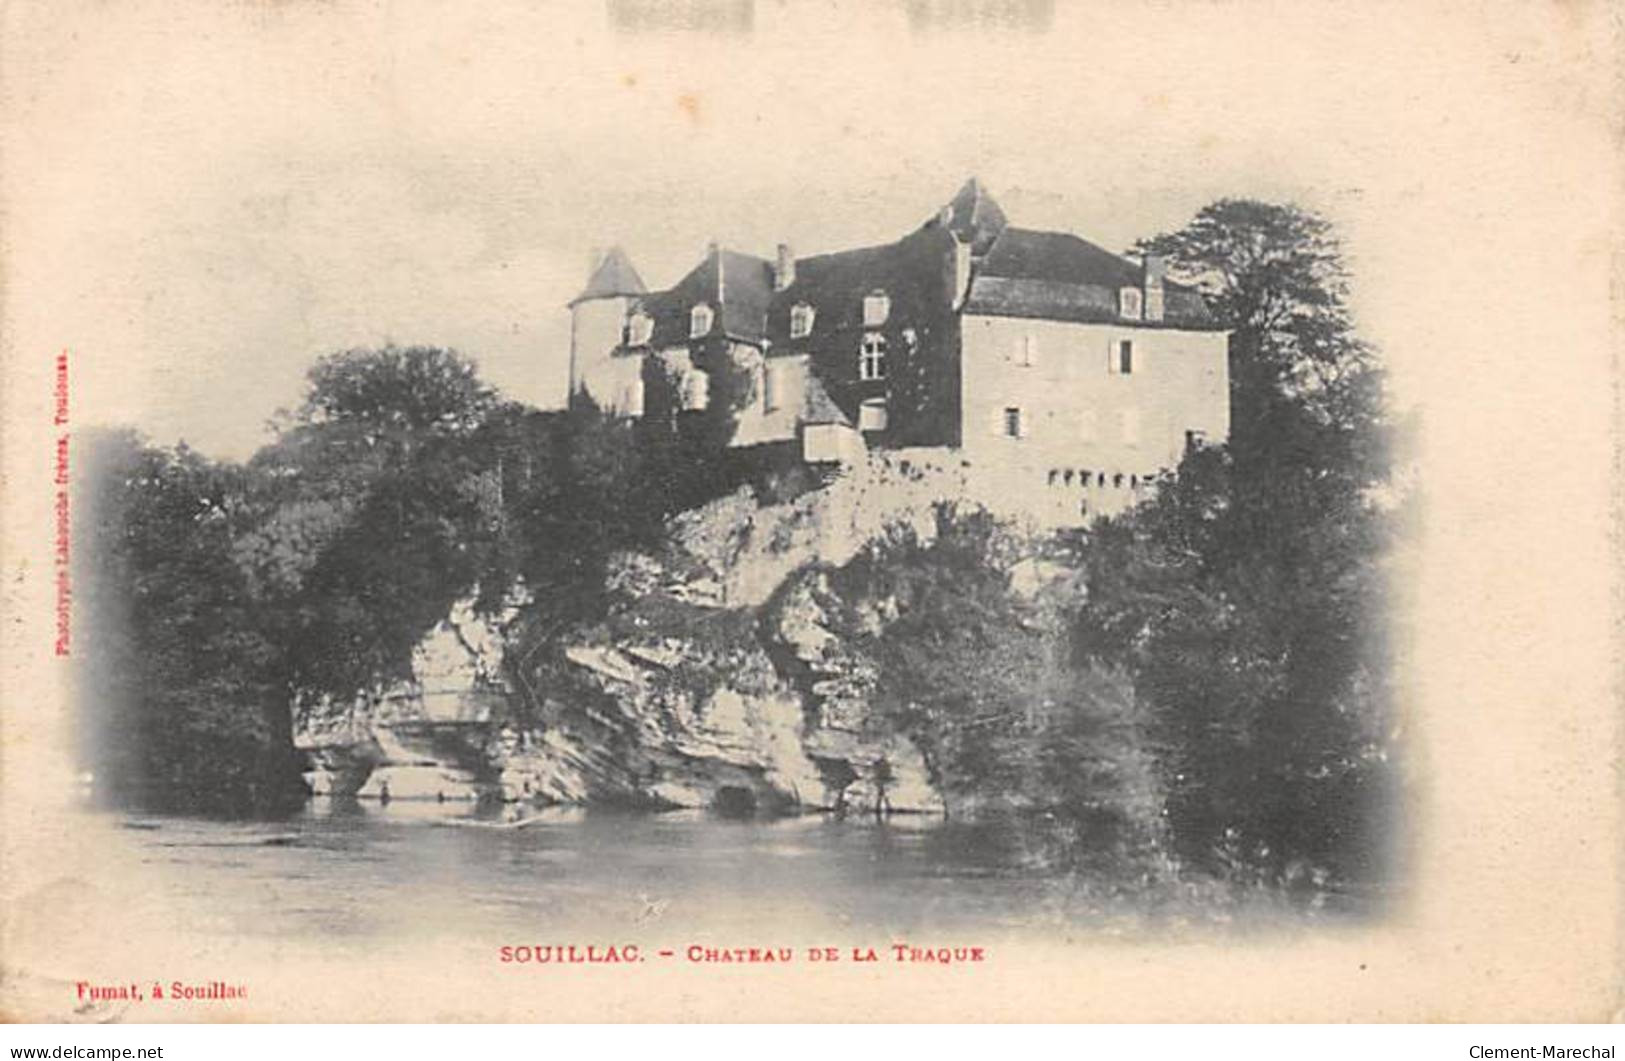 SOUILLAC - Chateau de la Traque - très bon état